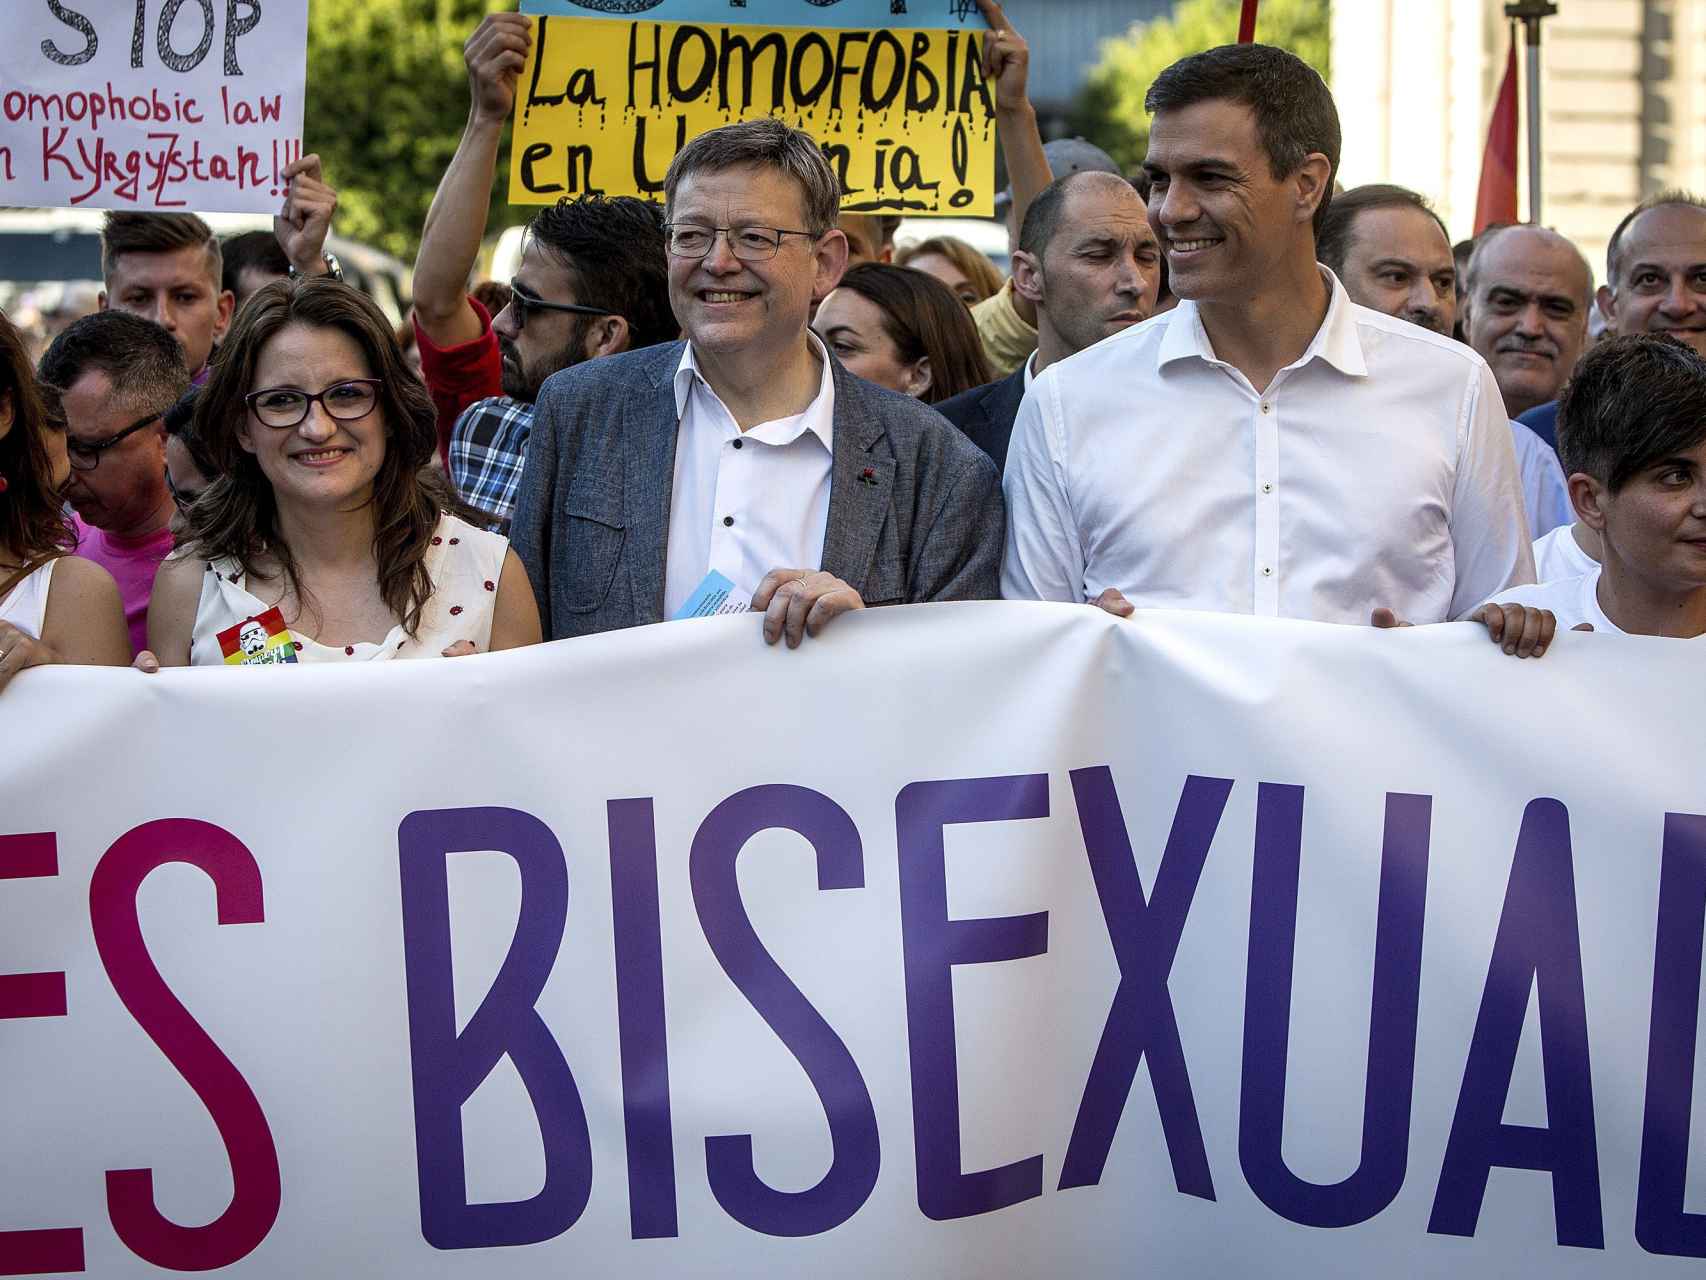 El candidato socialista liderando la manifestación LGTB en Valencia.